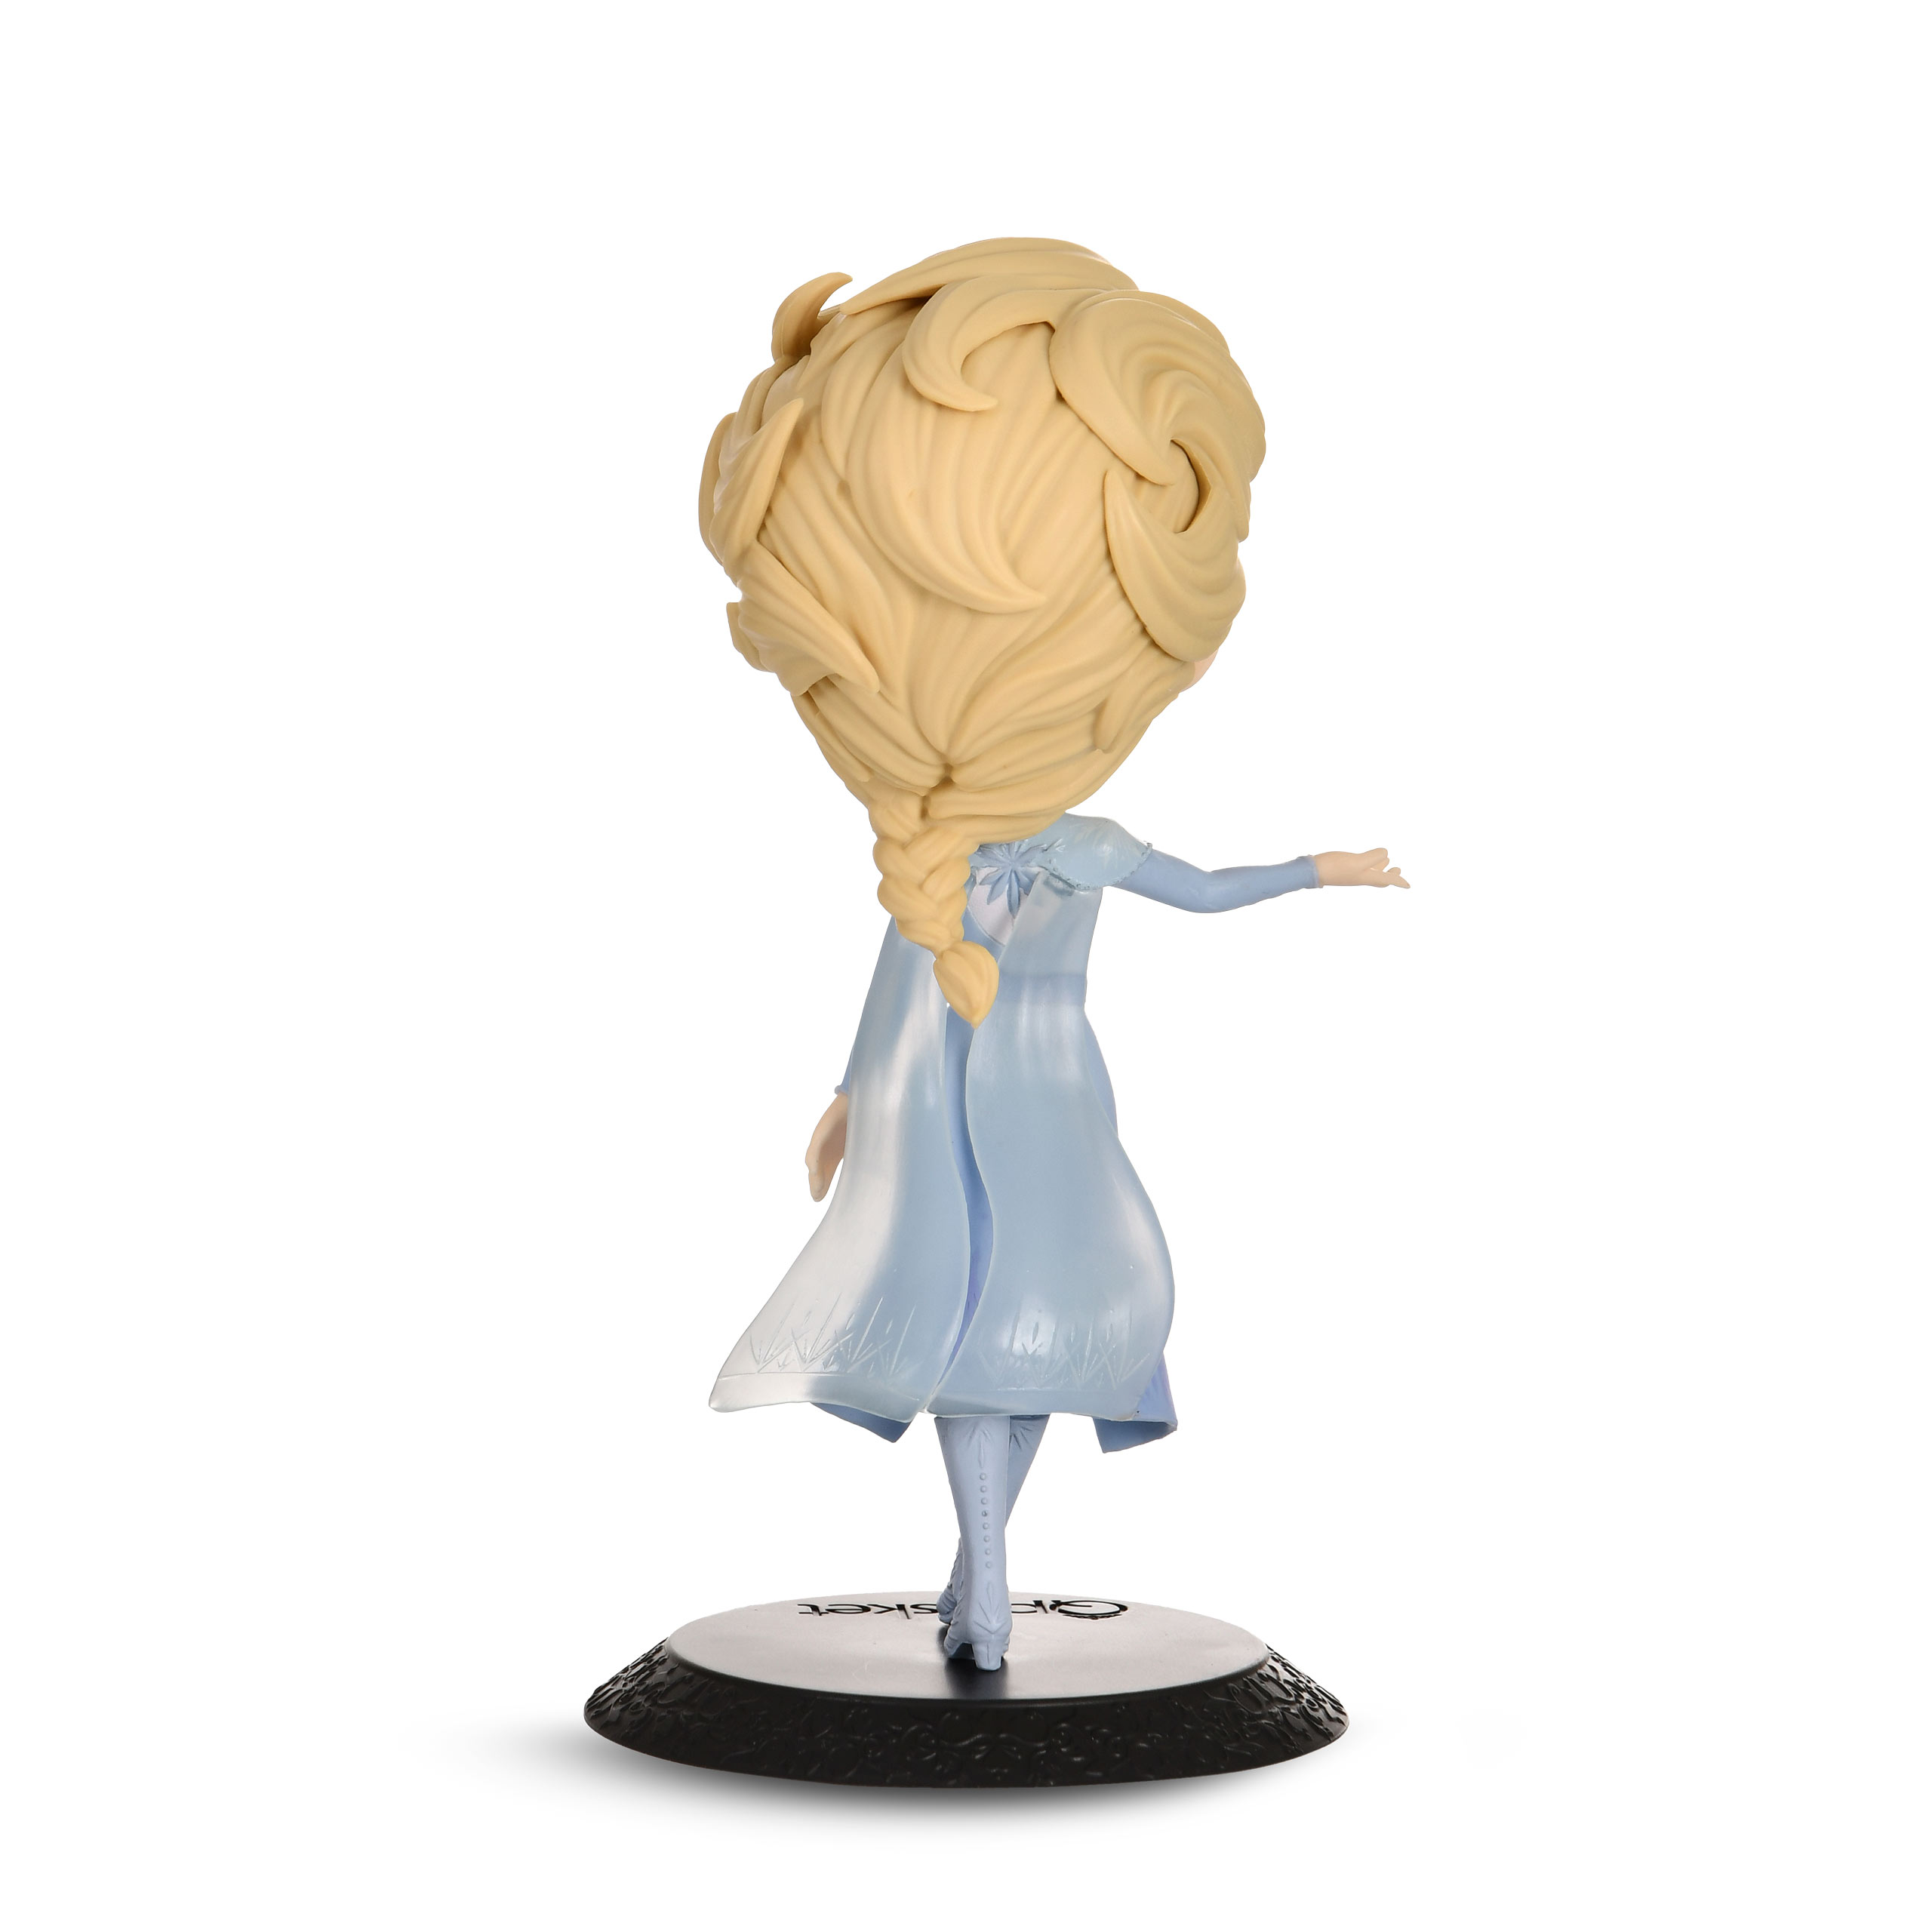 Frozen 2 - Elsa Q Posket Figur Vol. 2 Version A